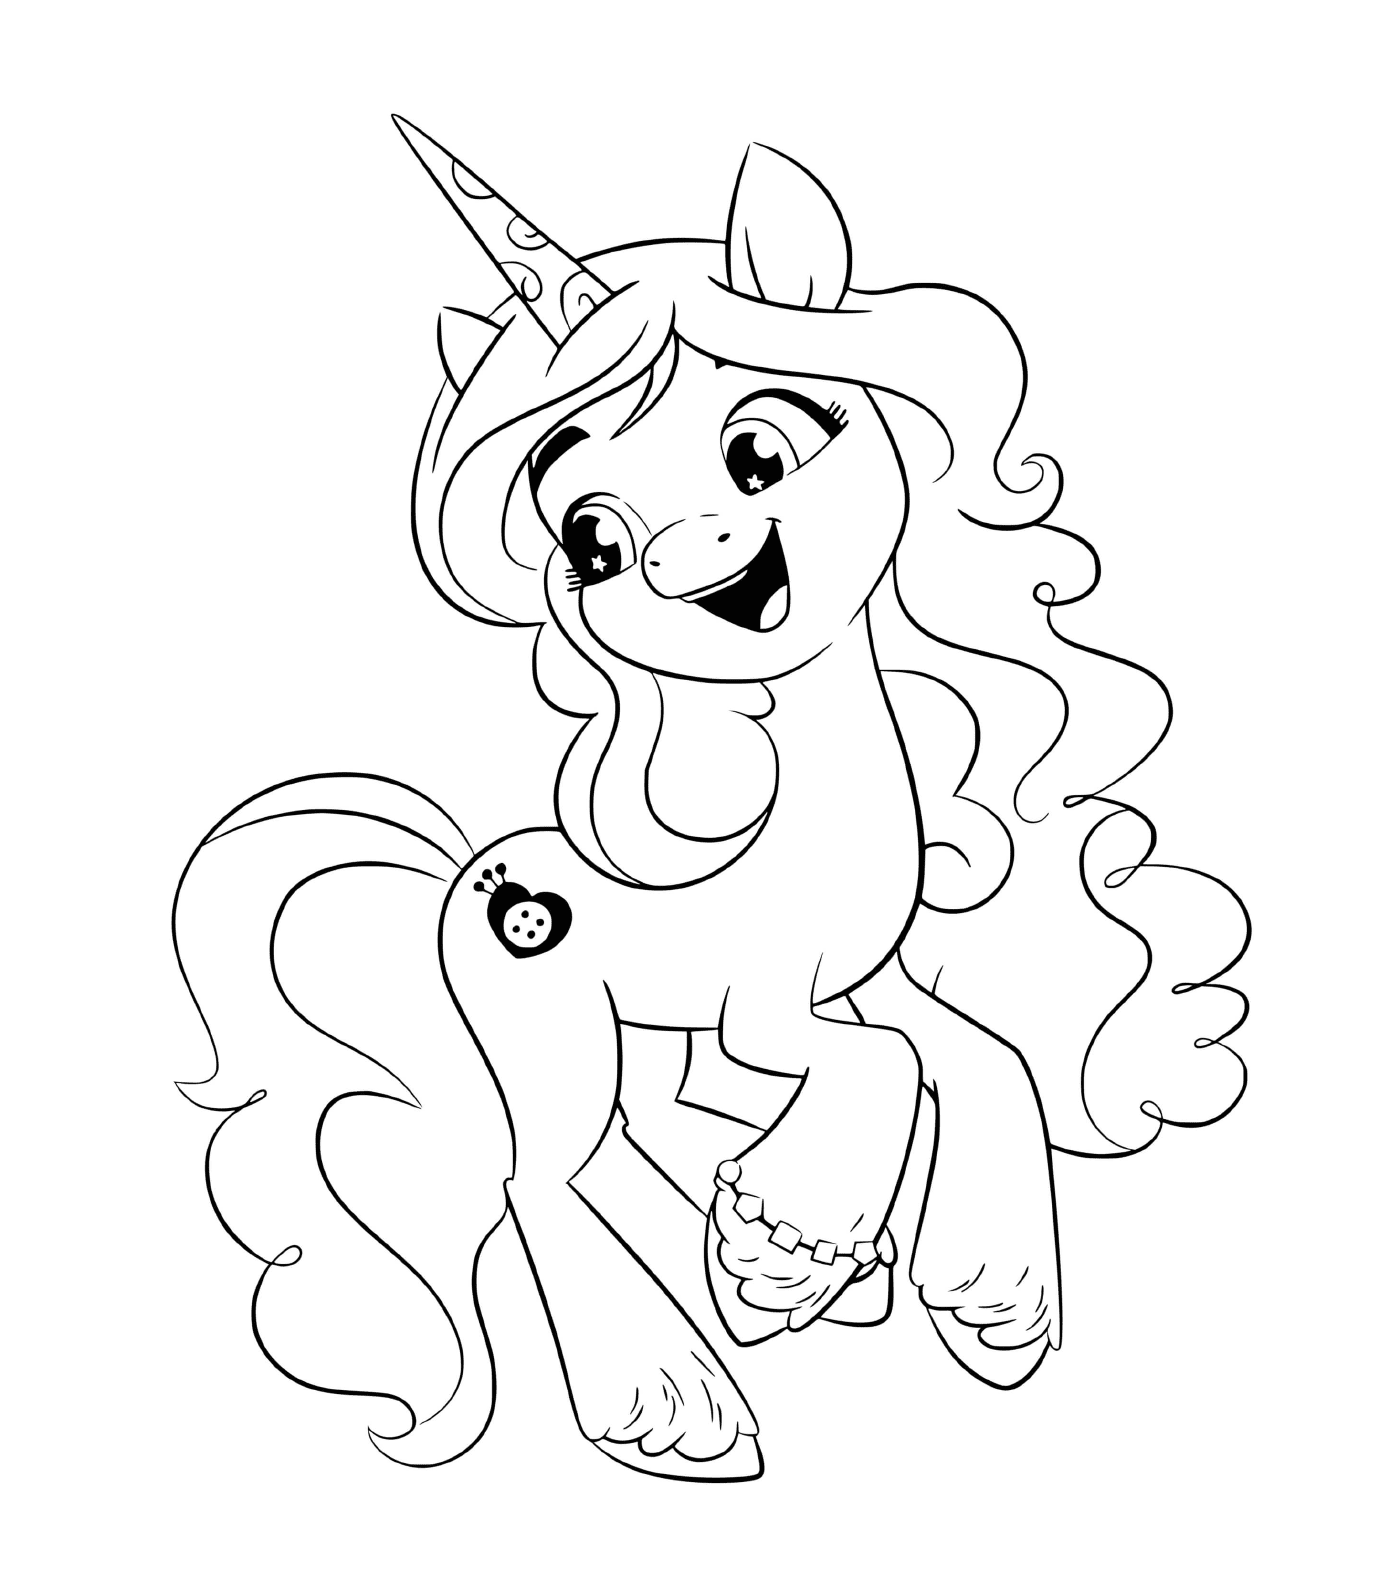  Izzy Moonbow, energetic unicorn enchanted 